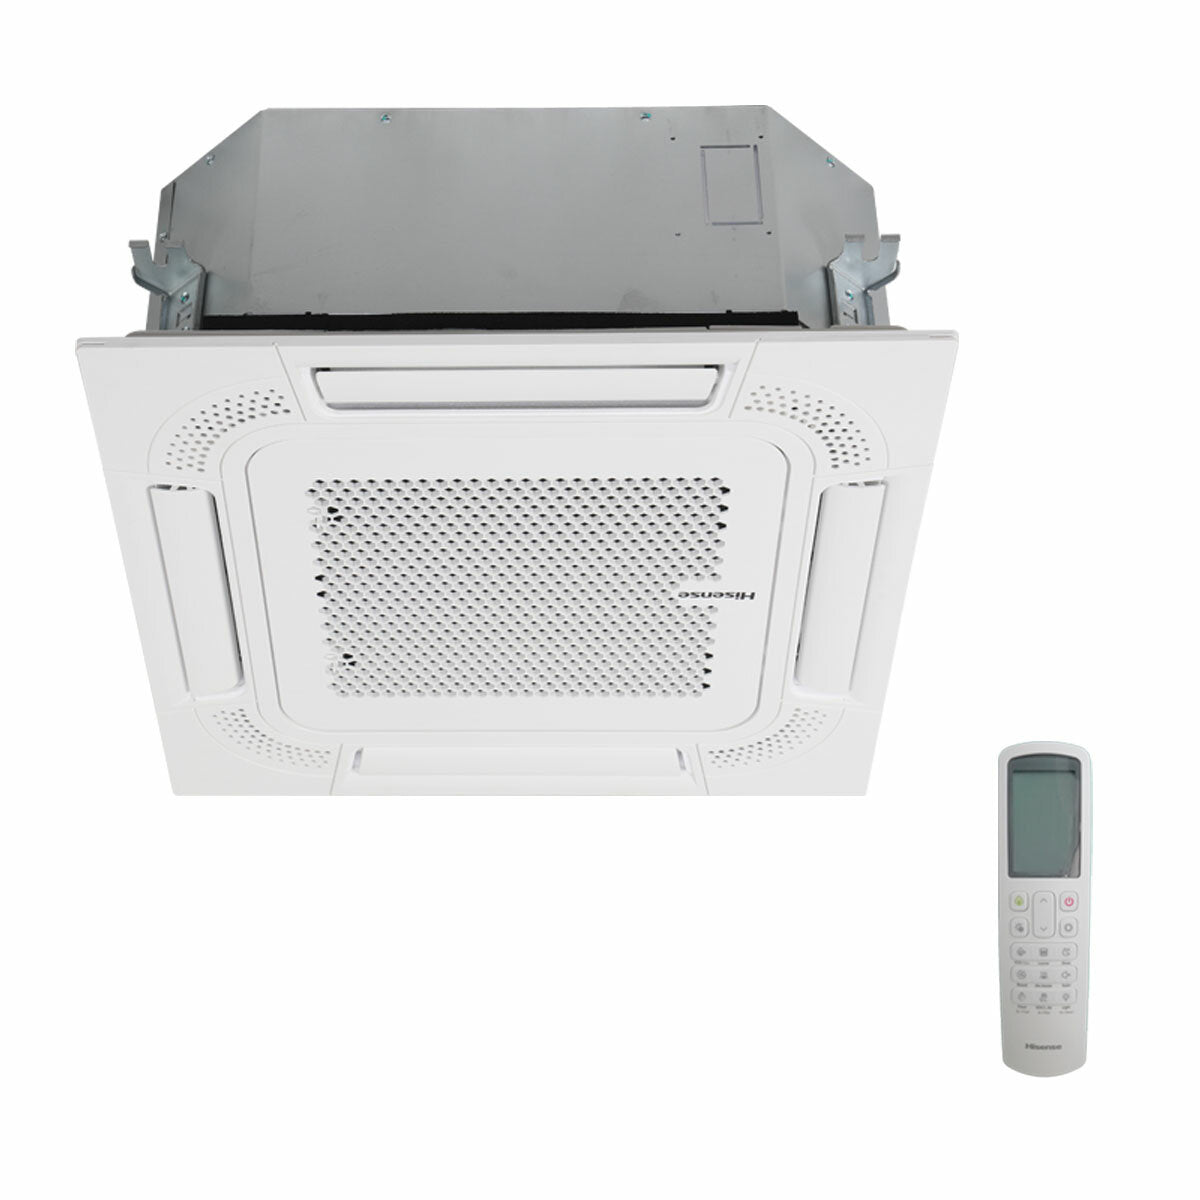 Hisense air conditioner Cassette ACT dual split 18000+18000 BTU inverter A++ outdoor unit 7 kW